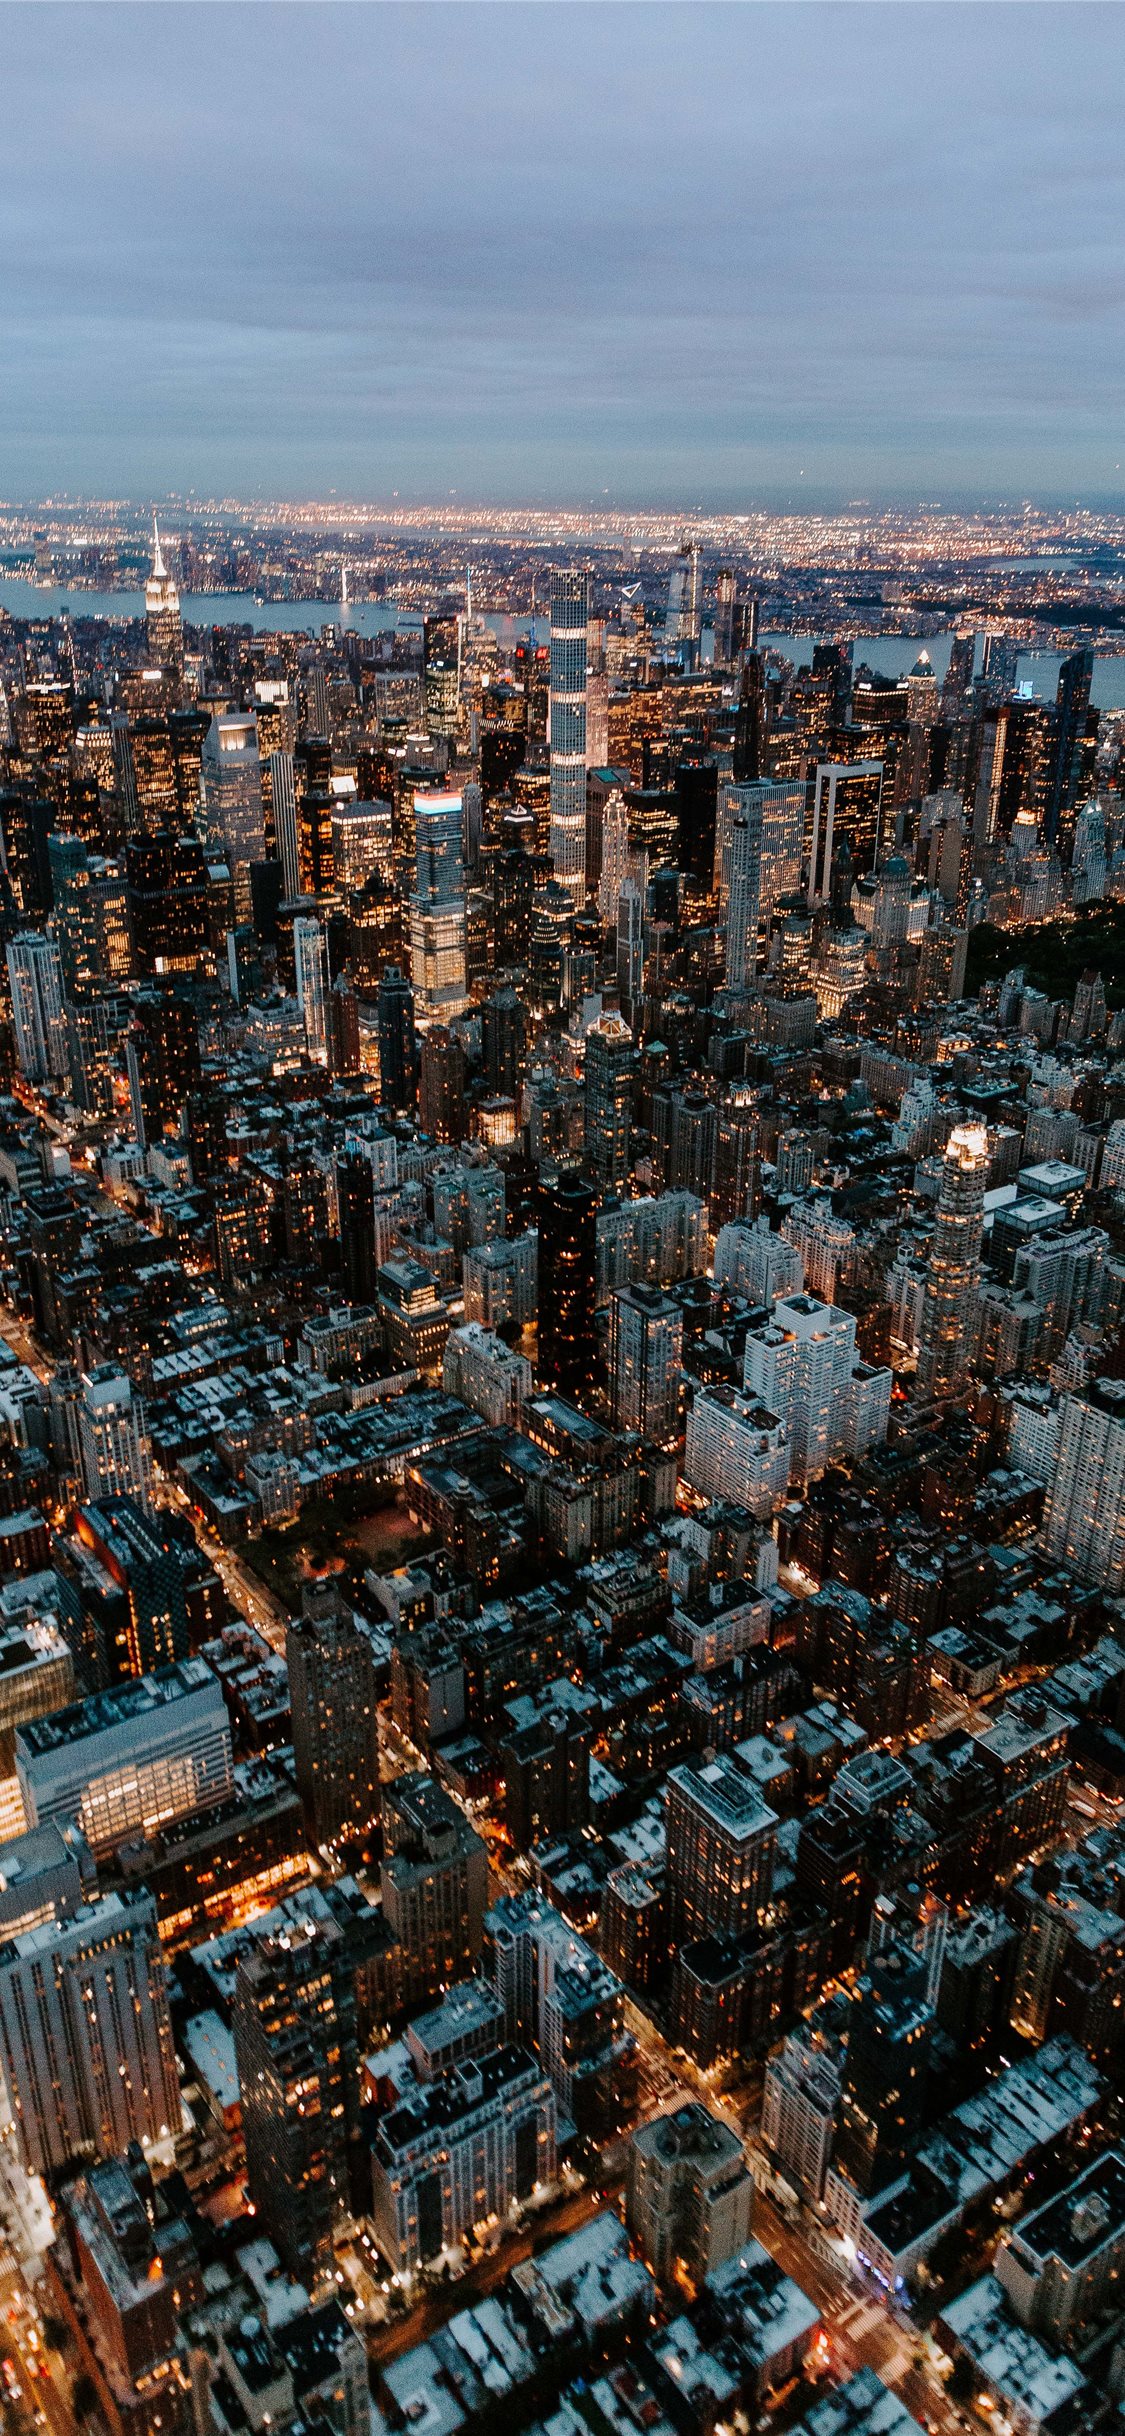 Hình nền iPhone New York City Hoa Kỳ: New York - thành phố vĩ đại và phức tạp với vô vàn điều để khám phá. Với hình nền iPhone New York City Hoa Kỳ này, bạn có thể trải qua cảm giác như đang ở trên đường phố này - ngắm nhìn các tòa nhà cao tầng bủa vây, cảm nhận nhịp sống sôi động của thành phố. Đừng bỏ lỡ cơ hội để đưa New York vào màn hình của bạn. 